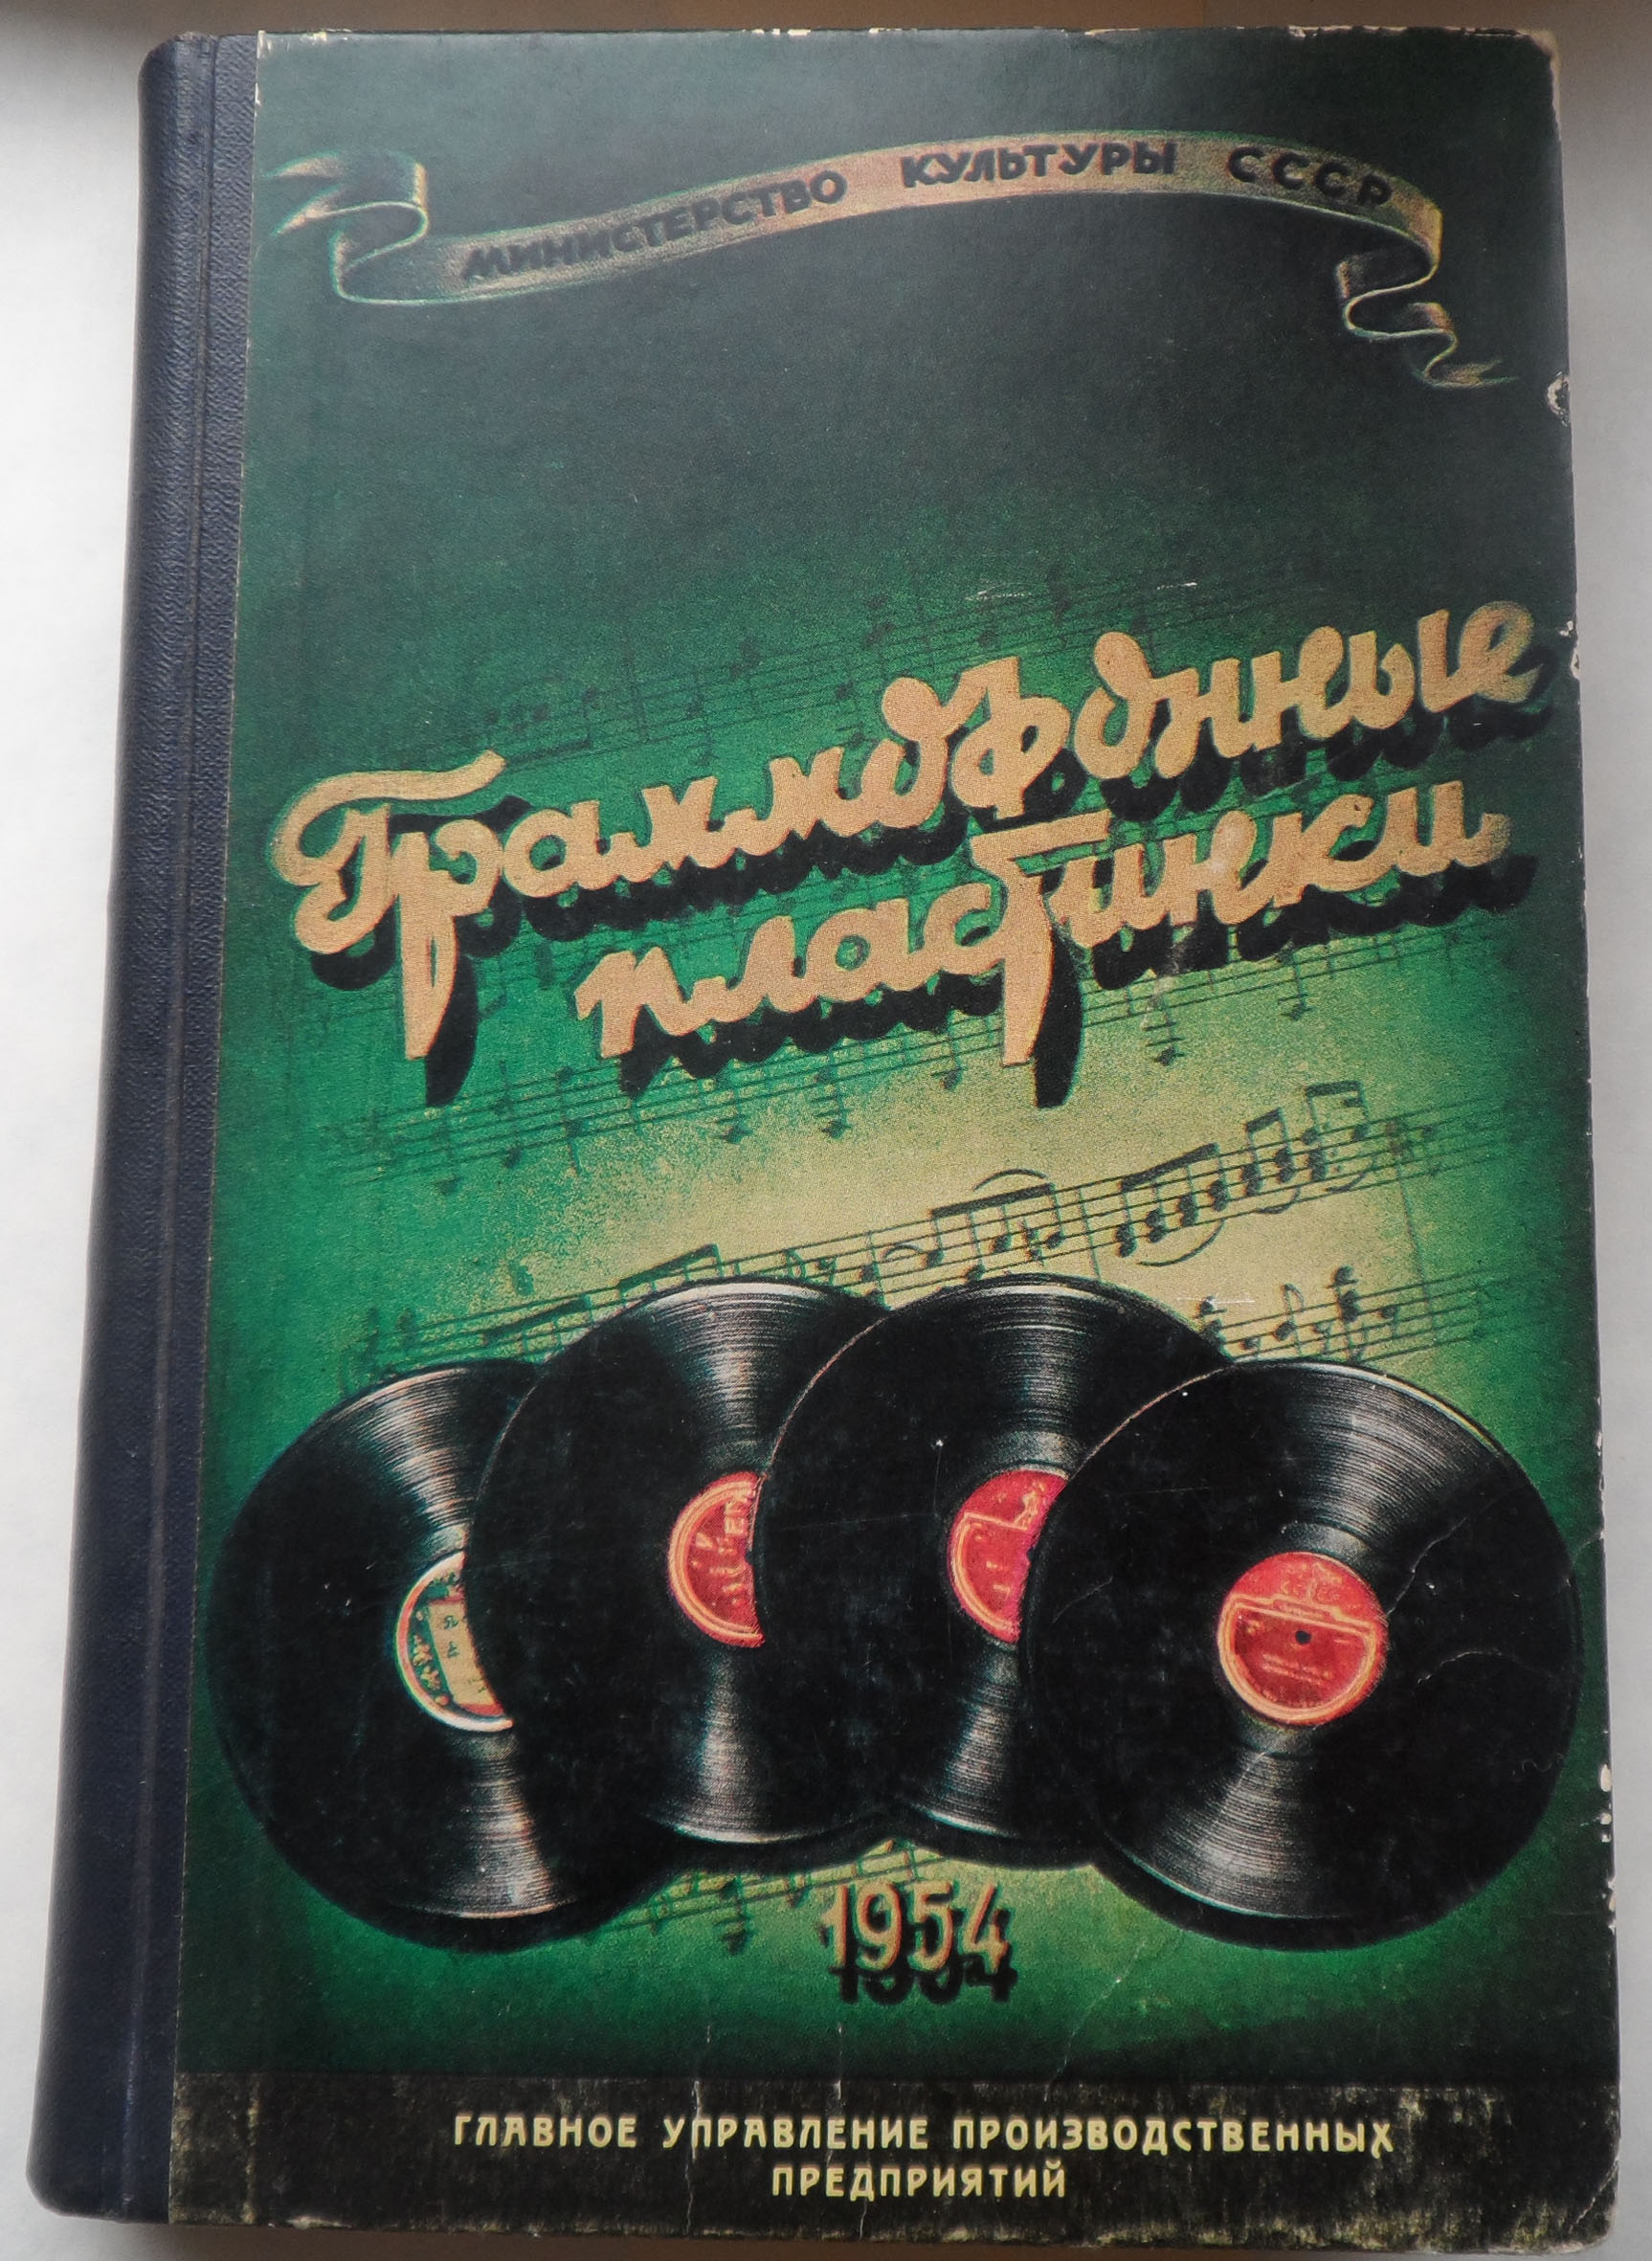 Граммофонные пластинки 1954 г.